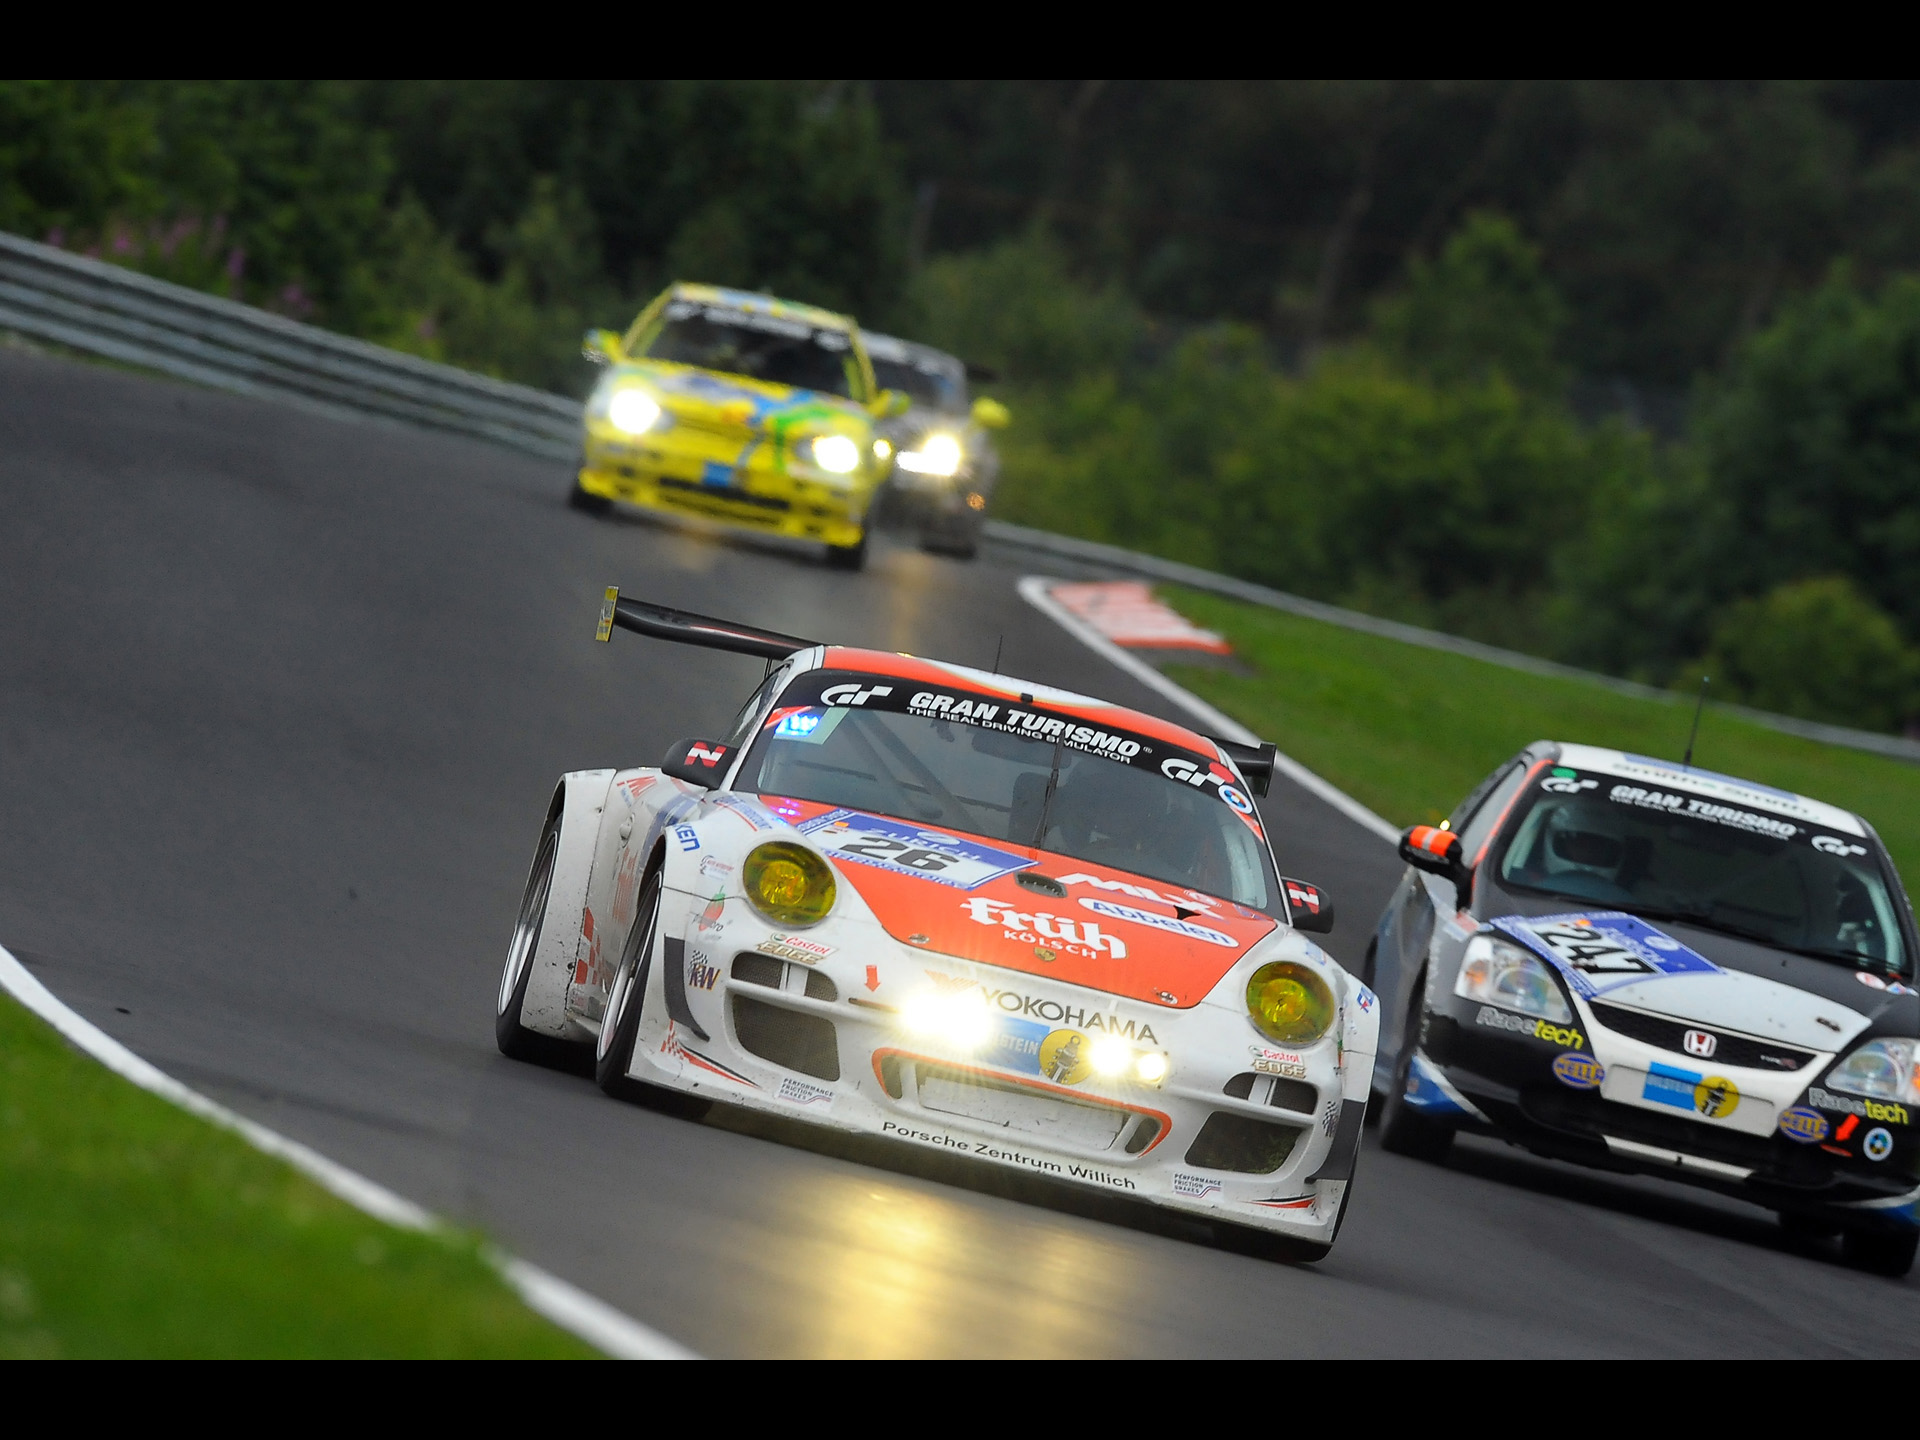 2011-Porsche-911-GT3-Victory-at-Nurburgring-24-Hours-MSC-Adenau-1920x1440.jpg